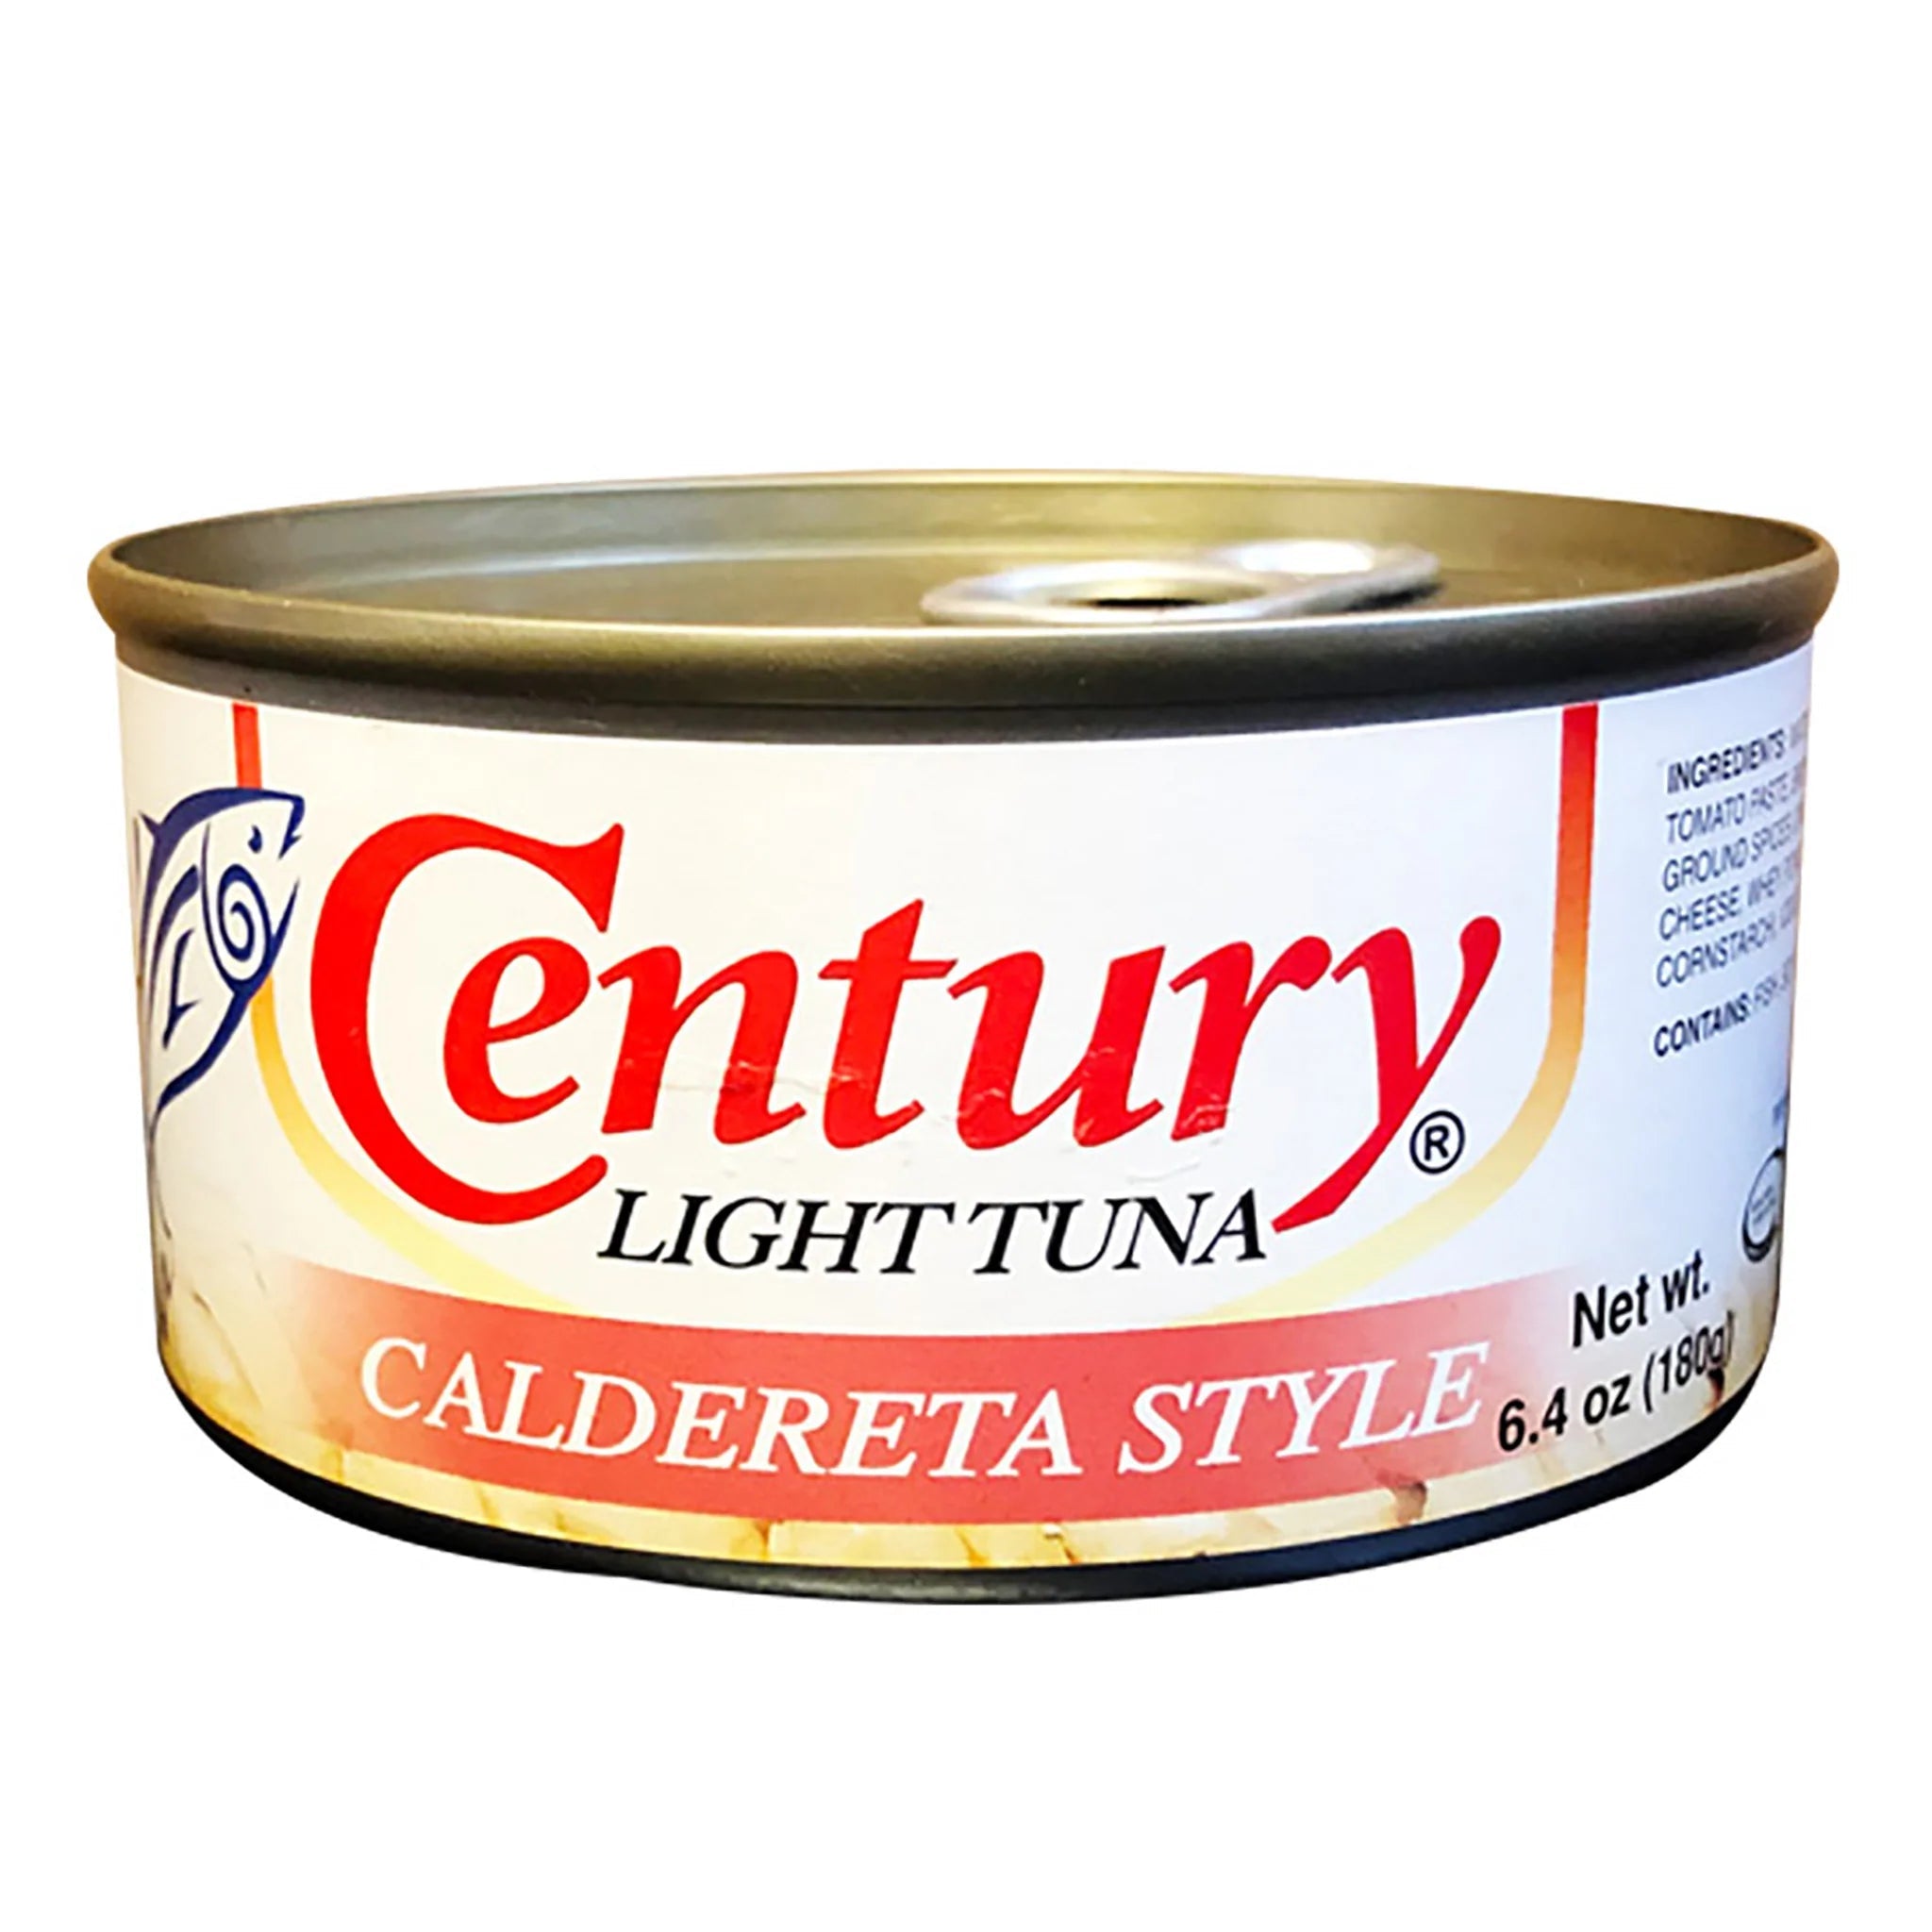 century tuna net weight